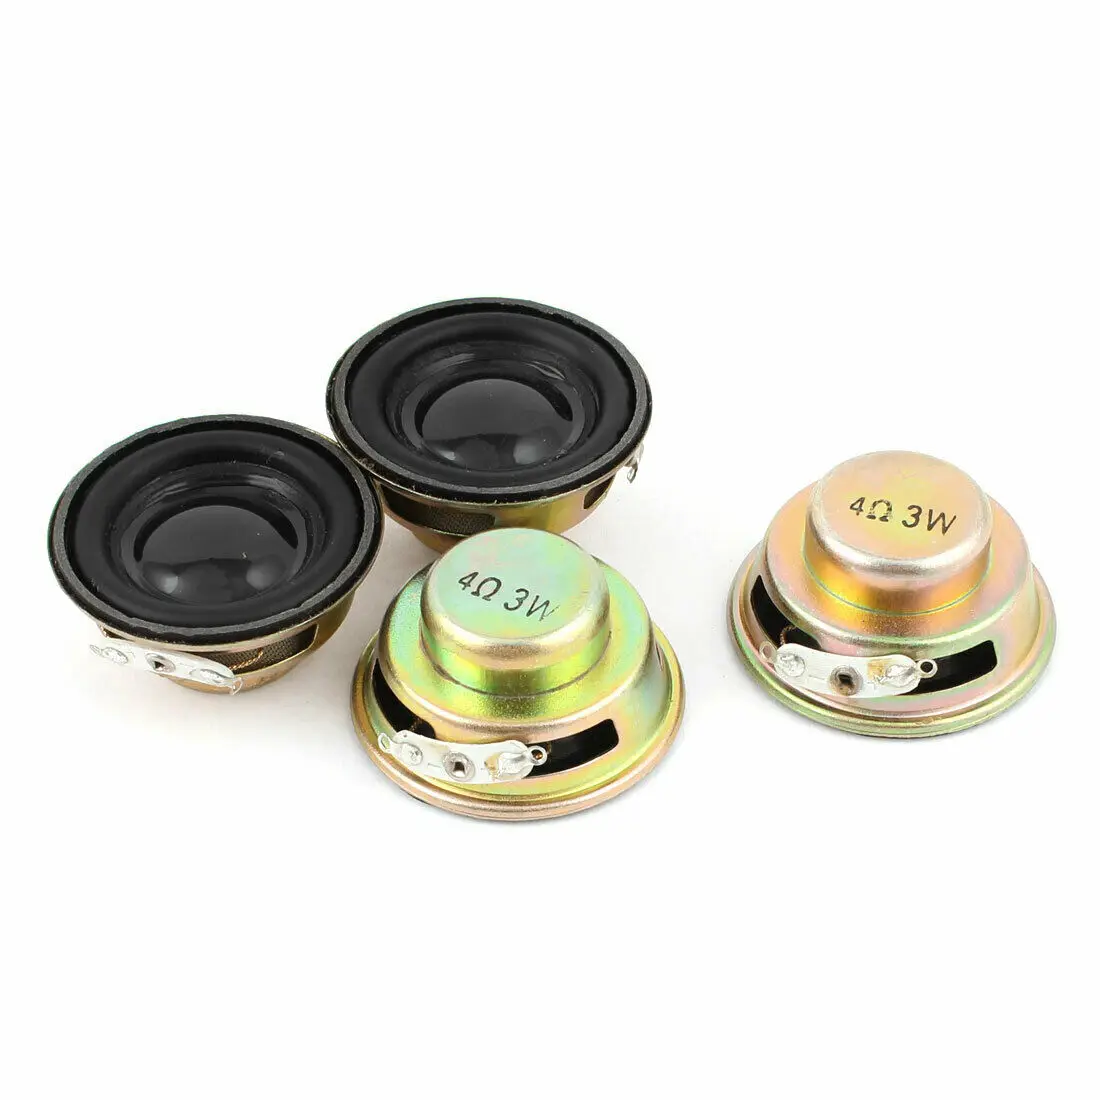 

10pcs/lot 3W 4R Speaker Mini Speakers Amplifier Rubber Gasket Loudspeaker Trumpet 3 Watt 4 ohms Speaker Horn Diameter 40MM